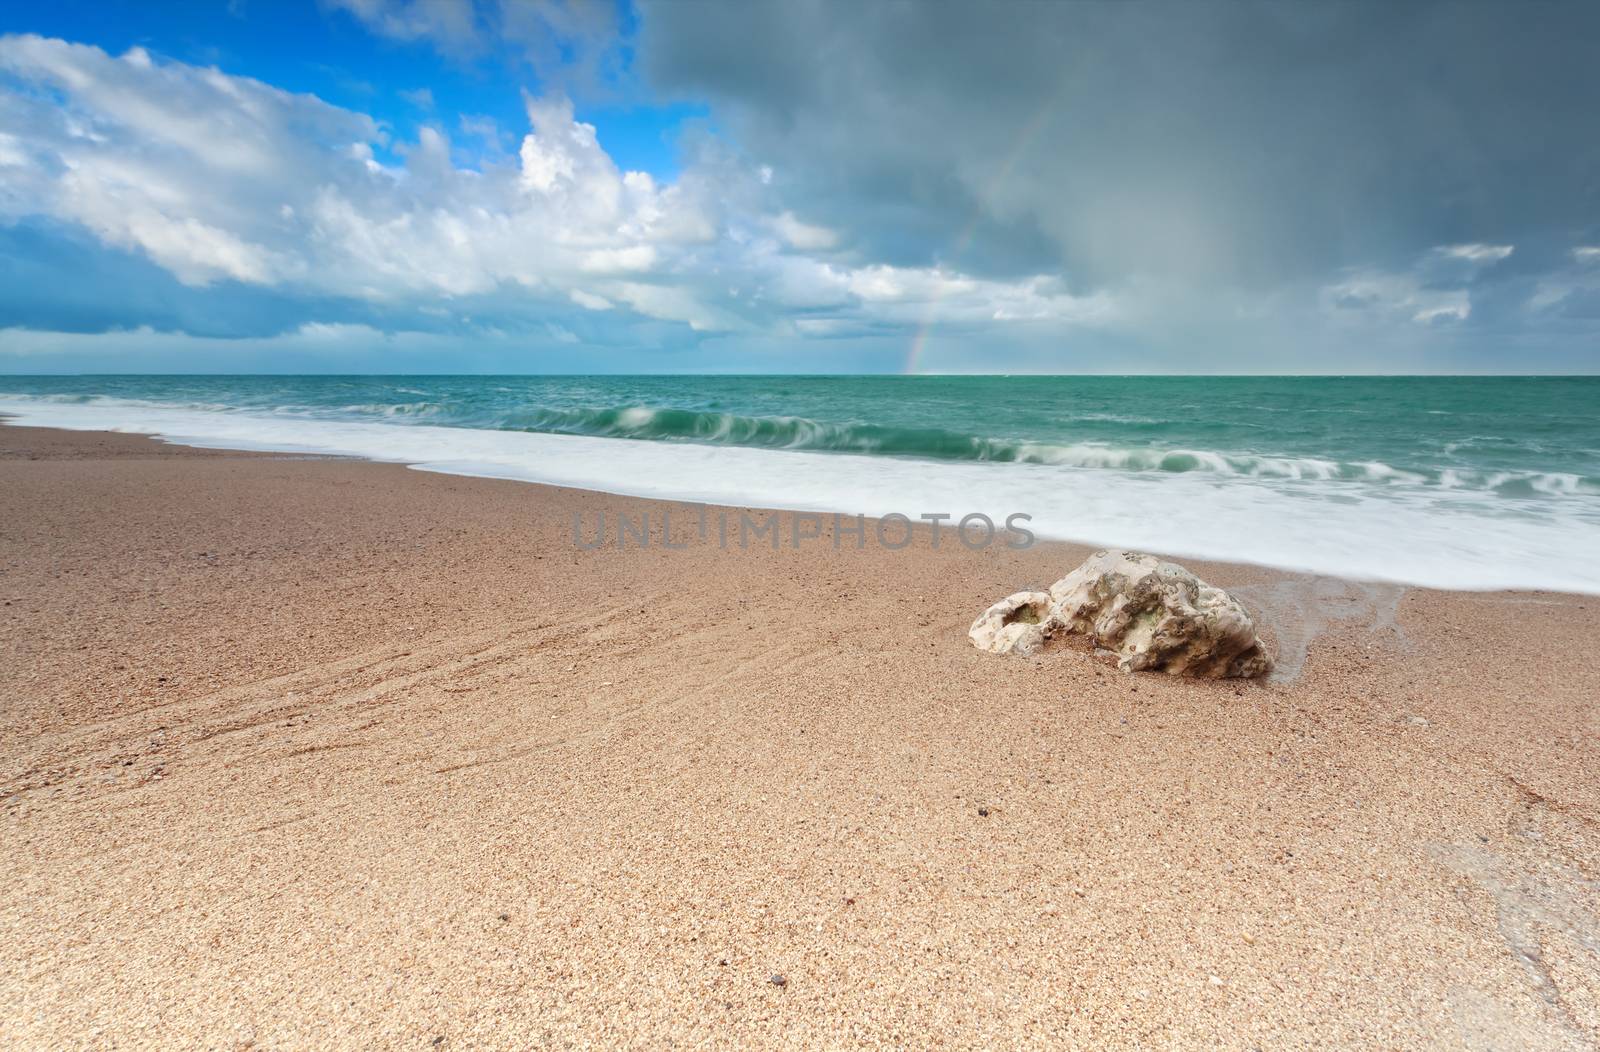 gold sand beach on Atlantic ocean coast, France